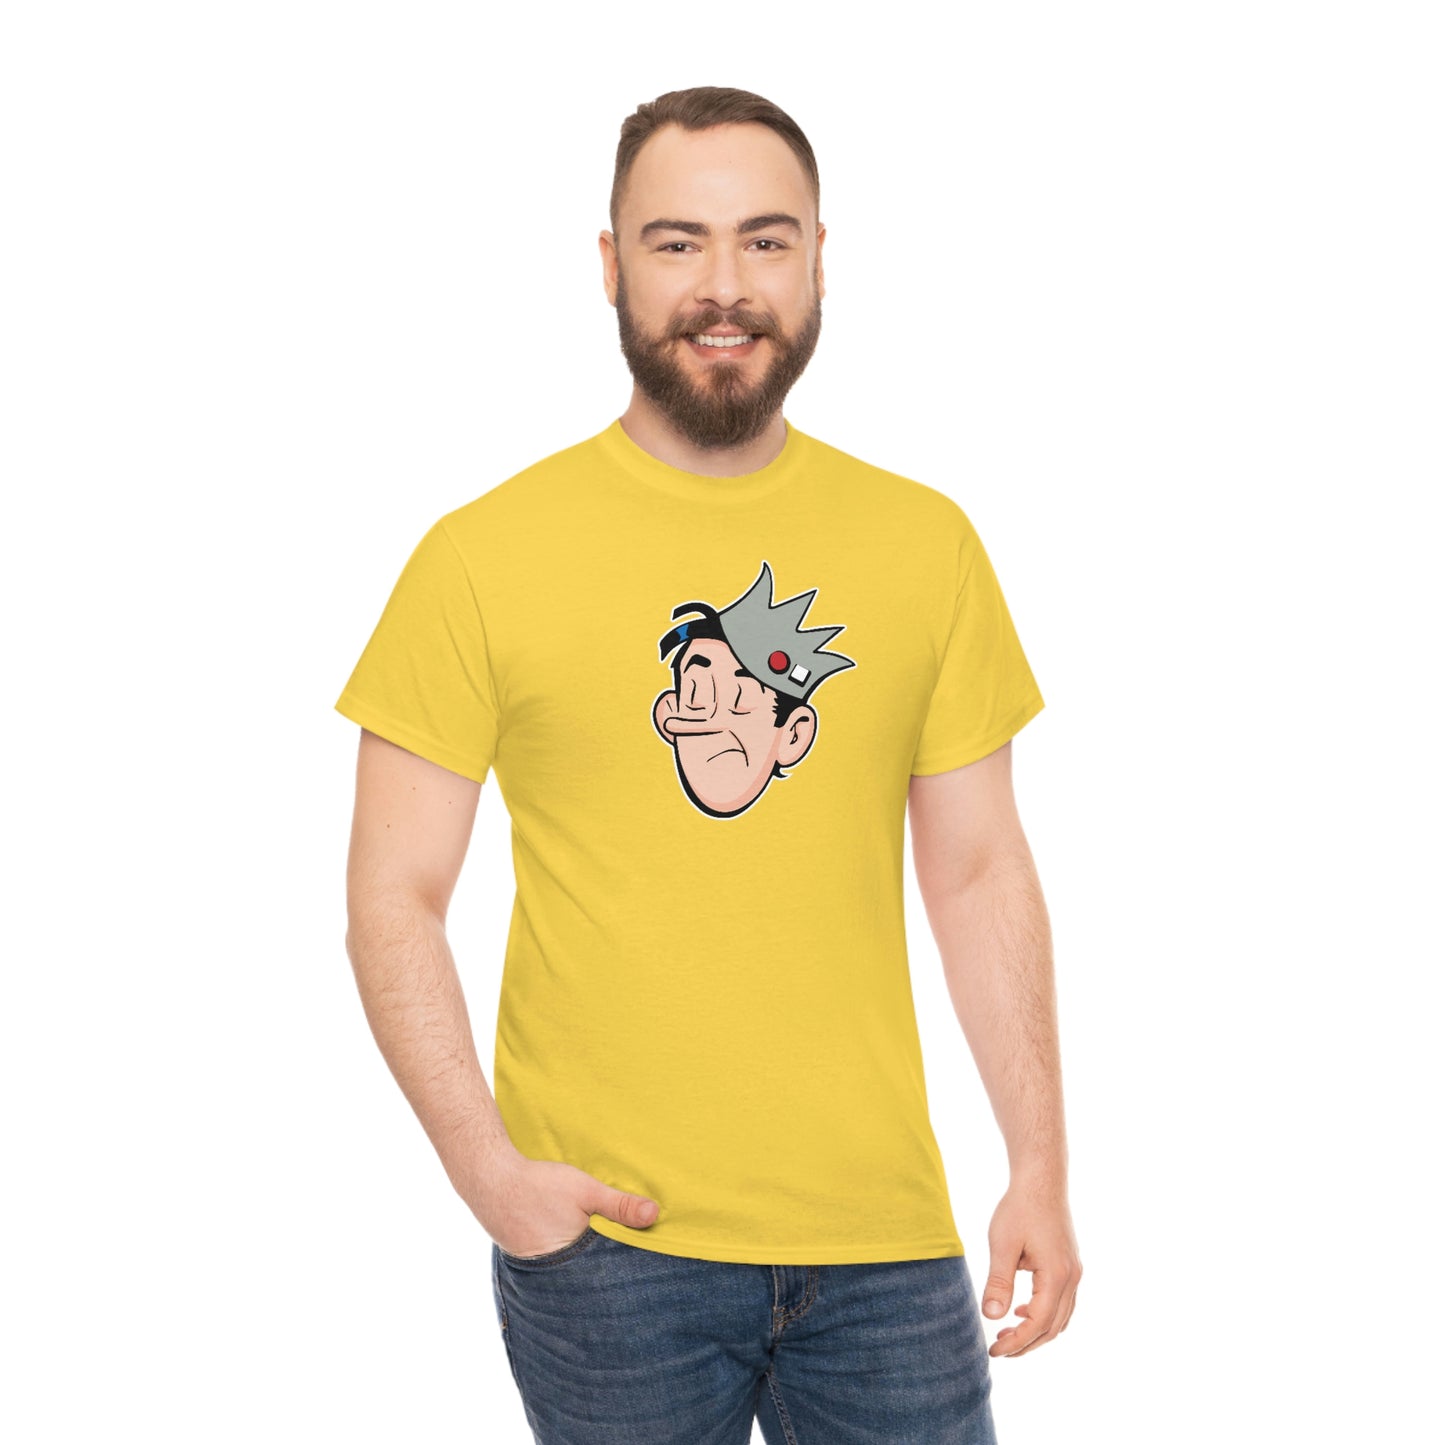 Jughead T-Shirt